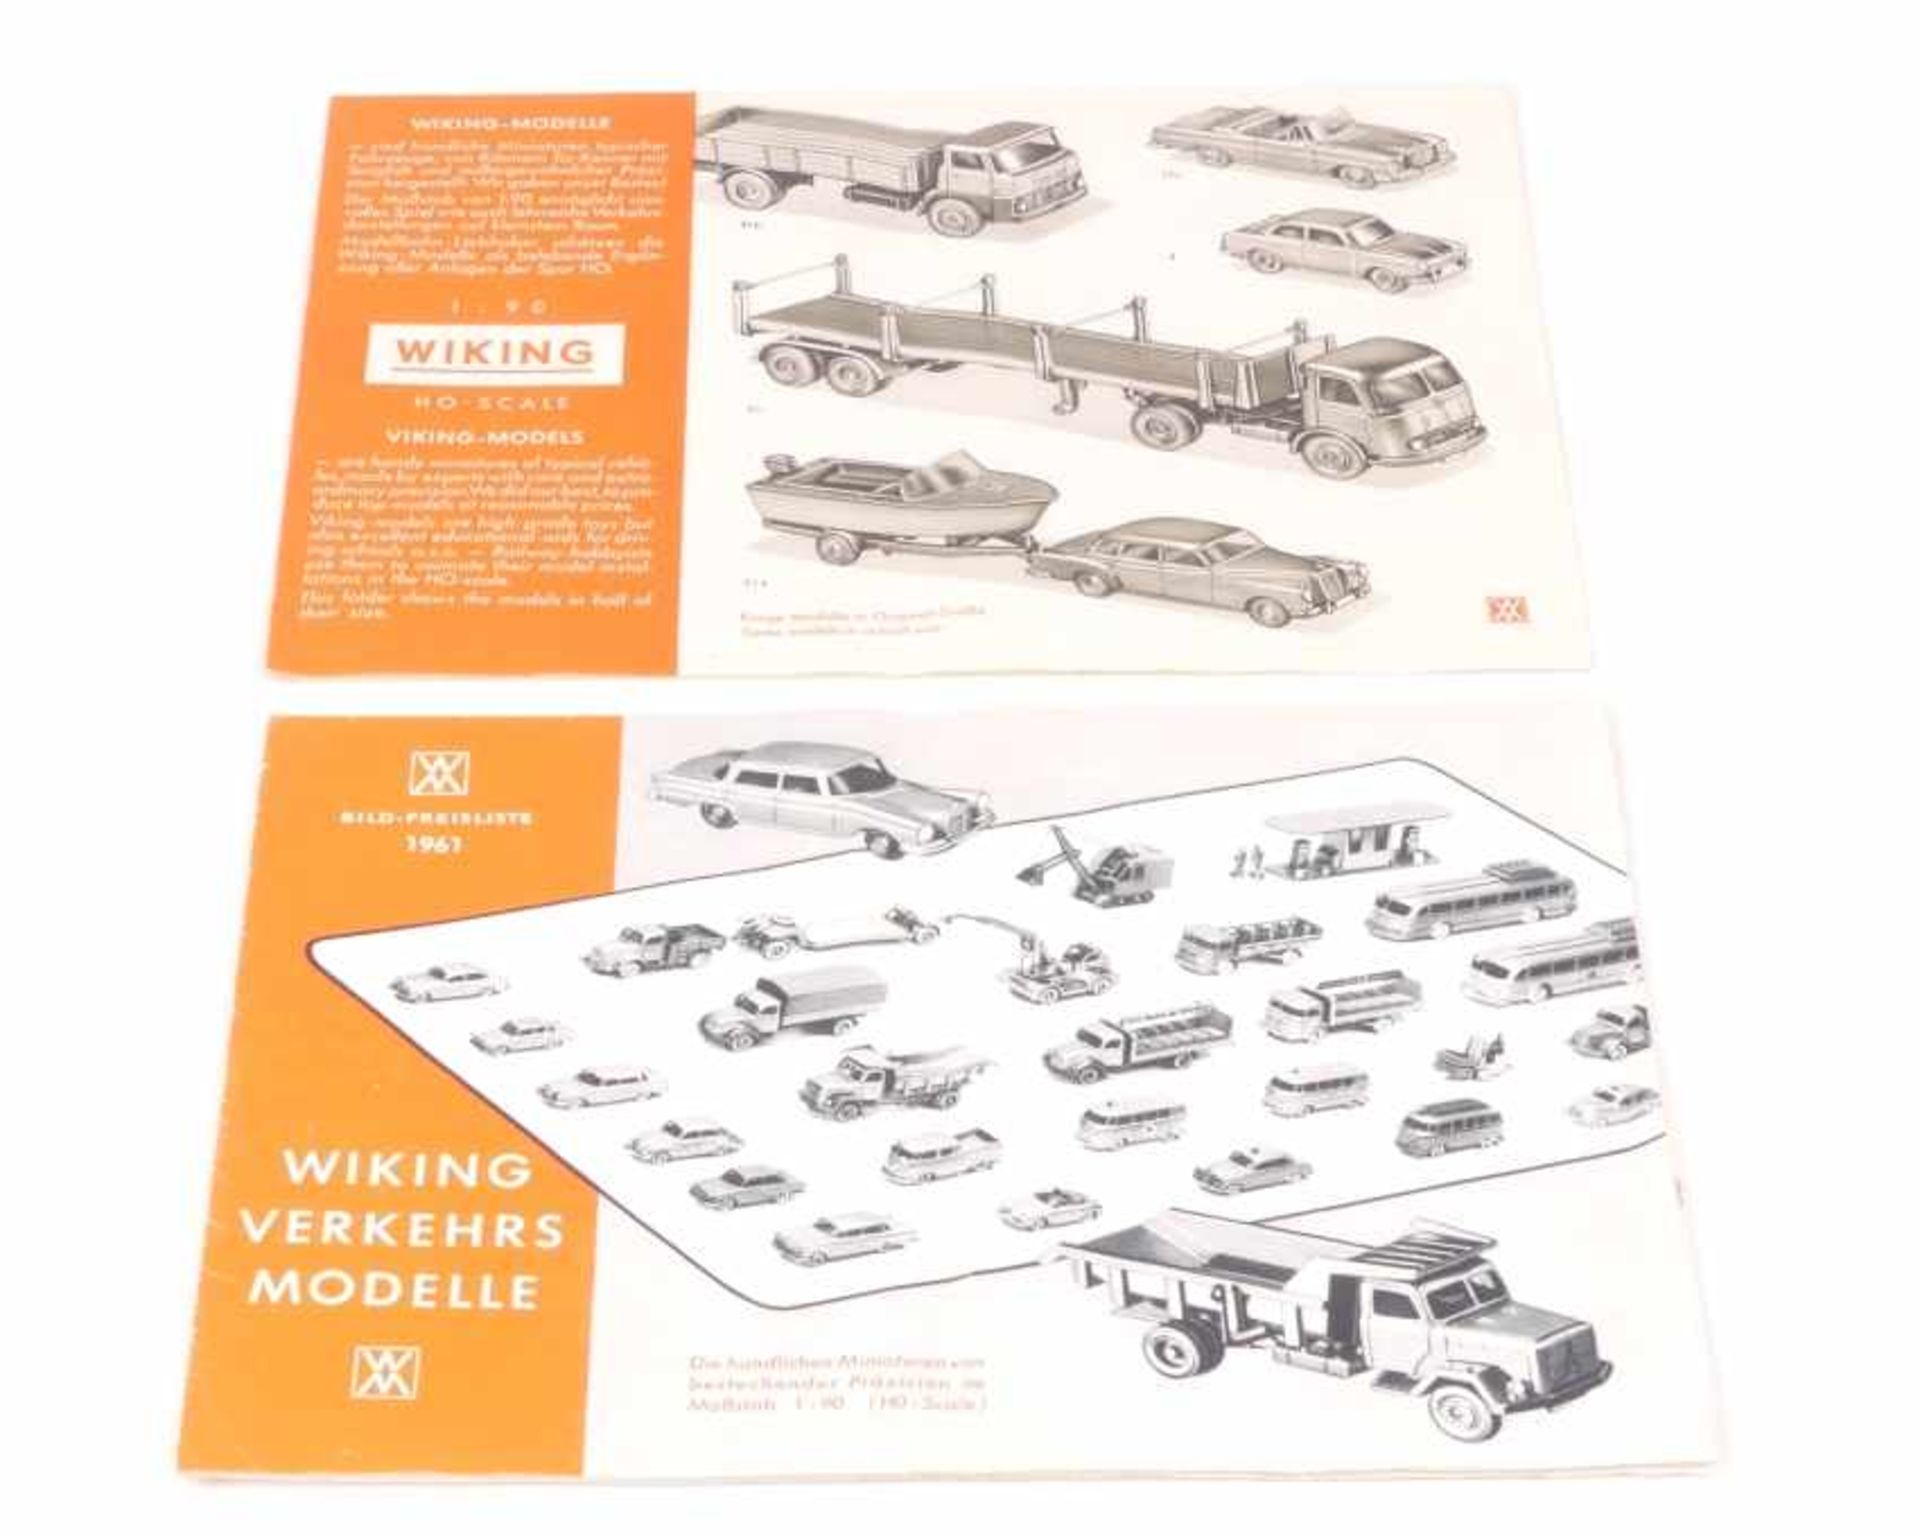 Wiking 2 Wiking Kataloge 1961 und 1963 sehr guter Zustand, jeweils einmal leicht mittig gefaltet